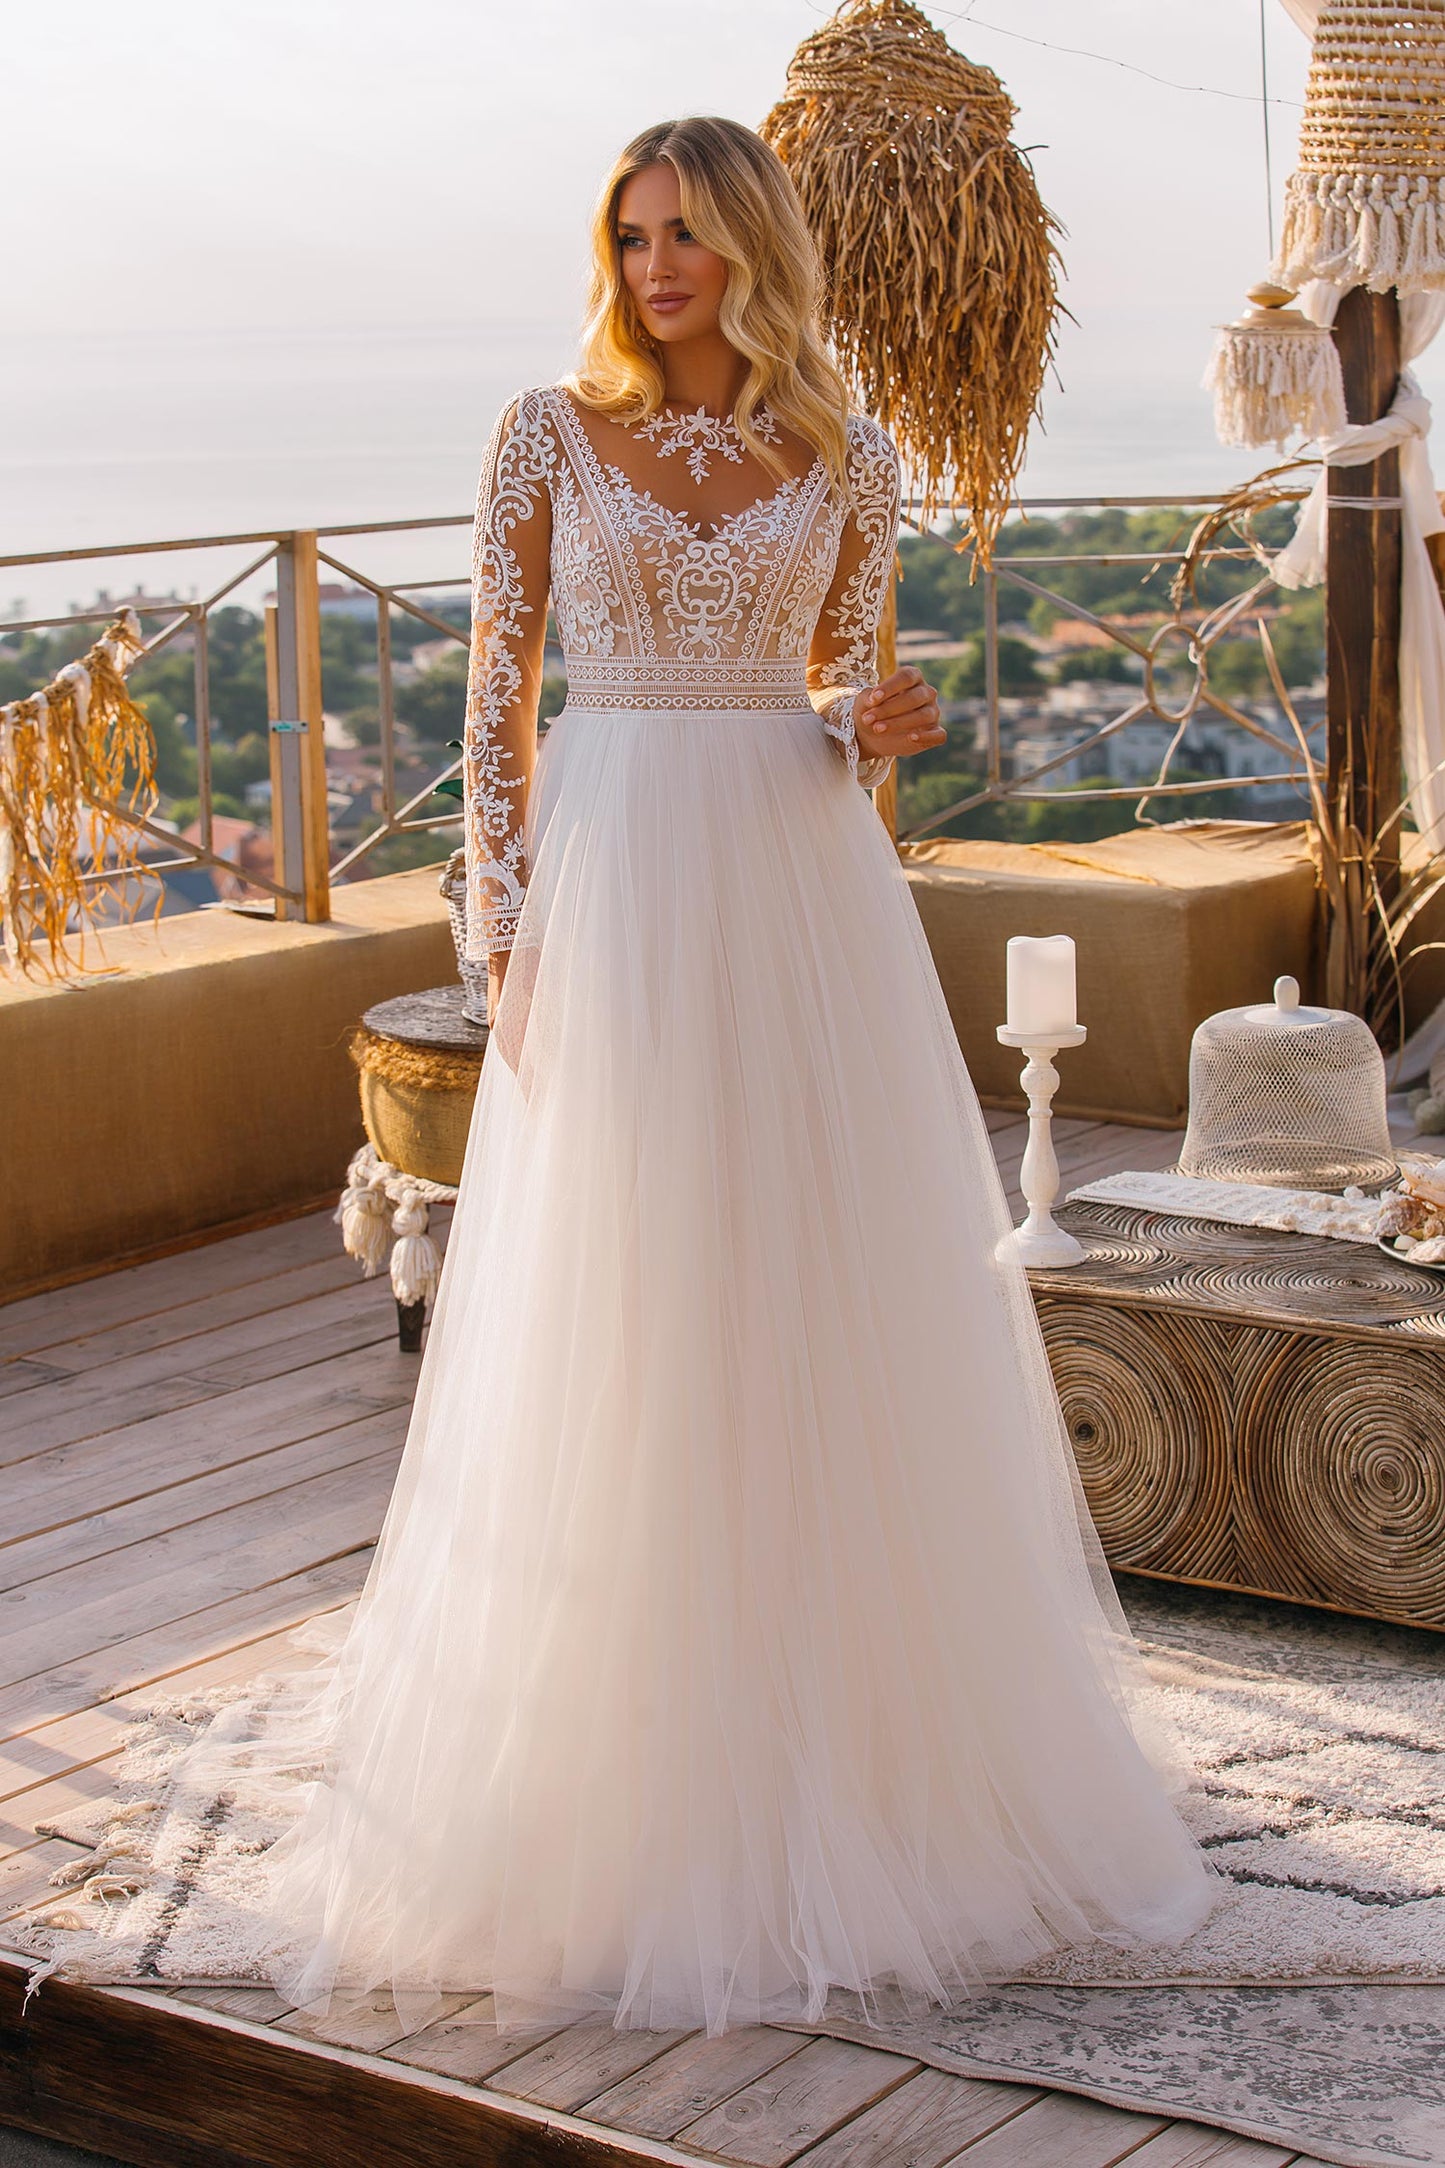 Wedding Dress| Miamigirlfriends| hilda 2